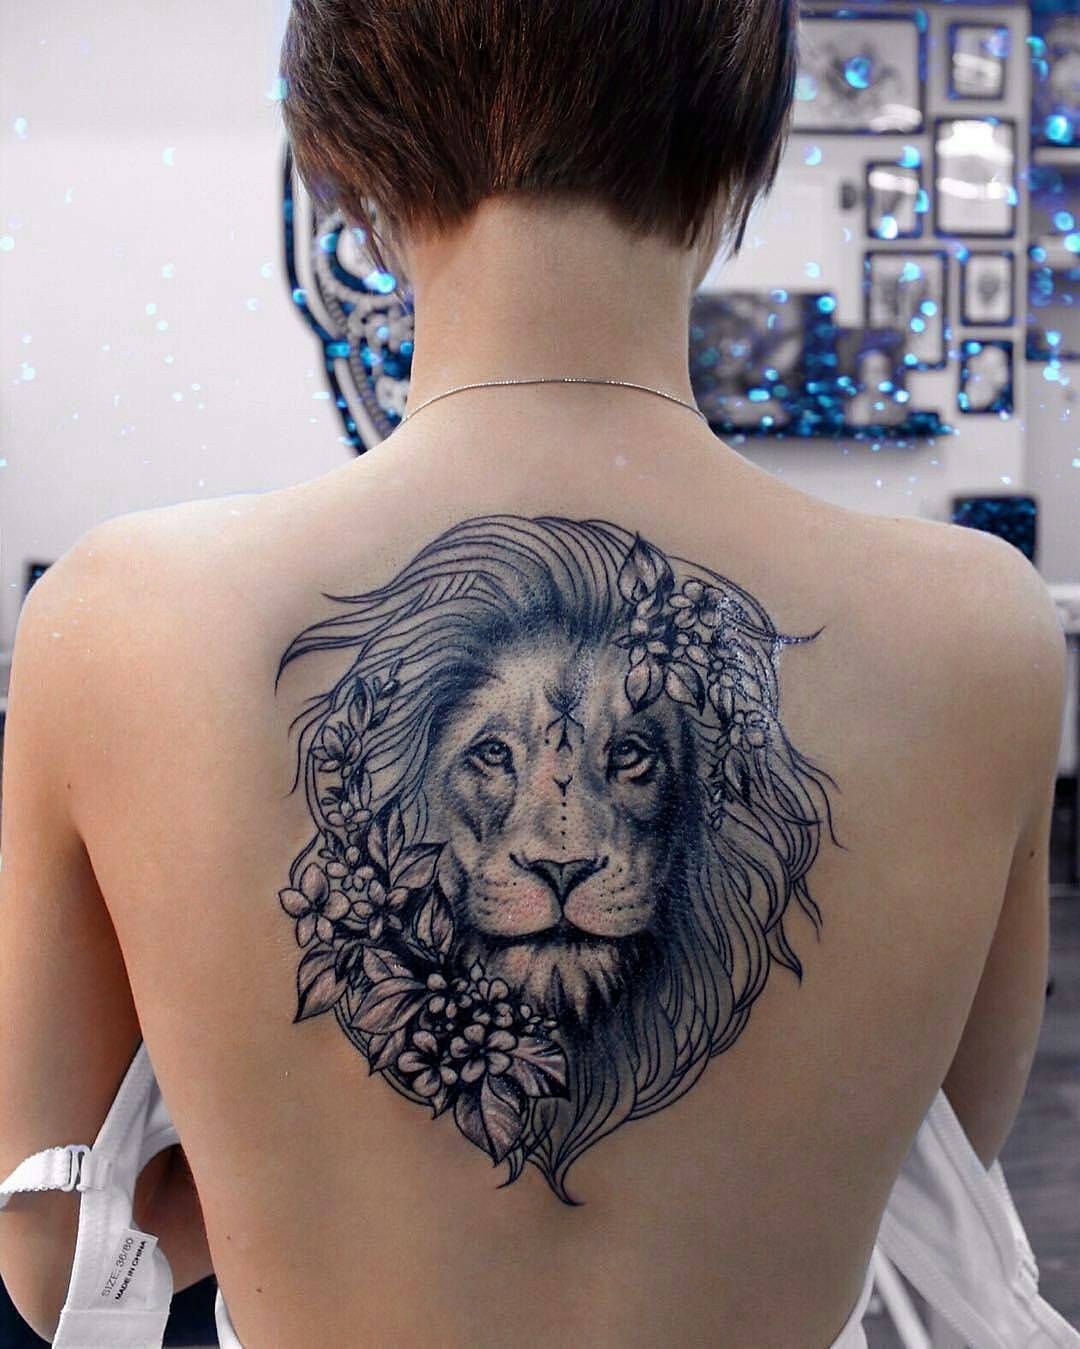 Tatuagem feminina de leão nas costas